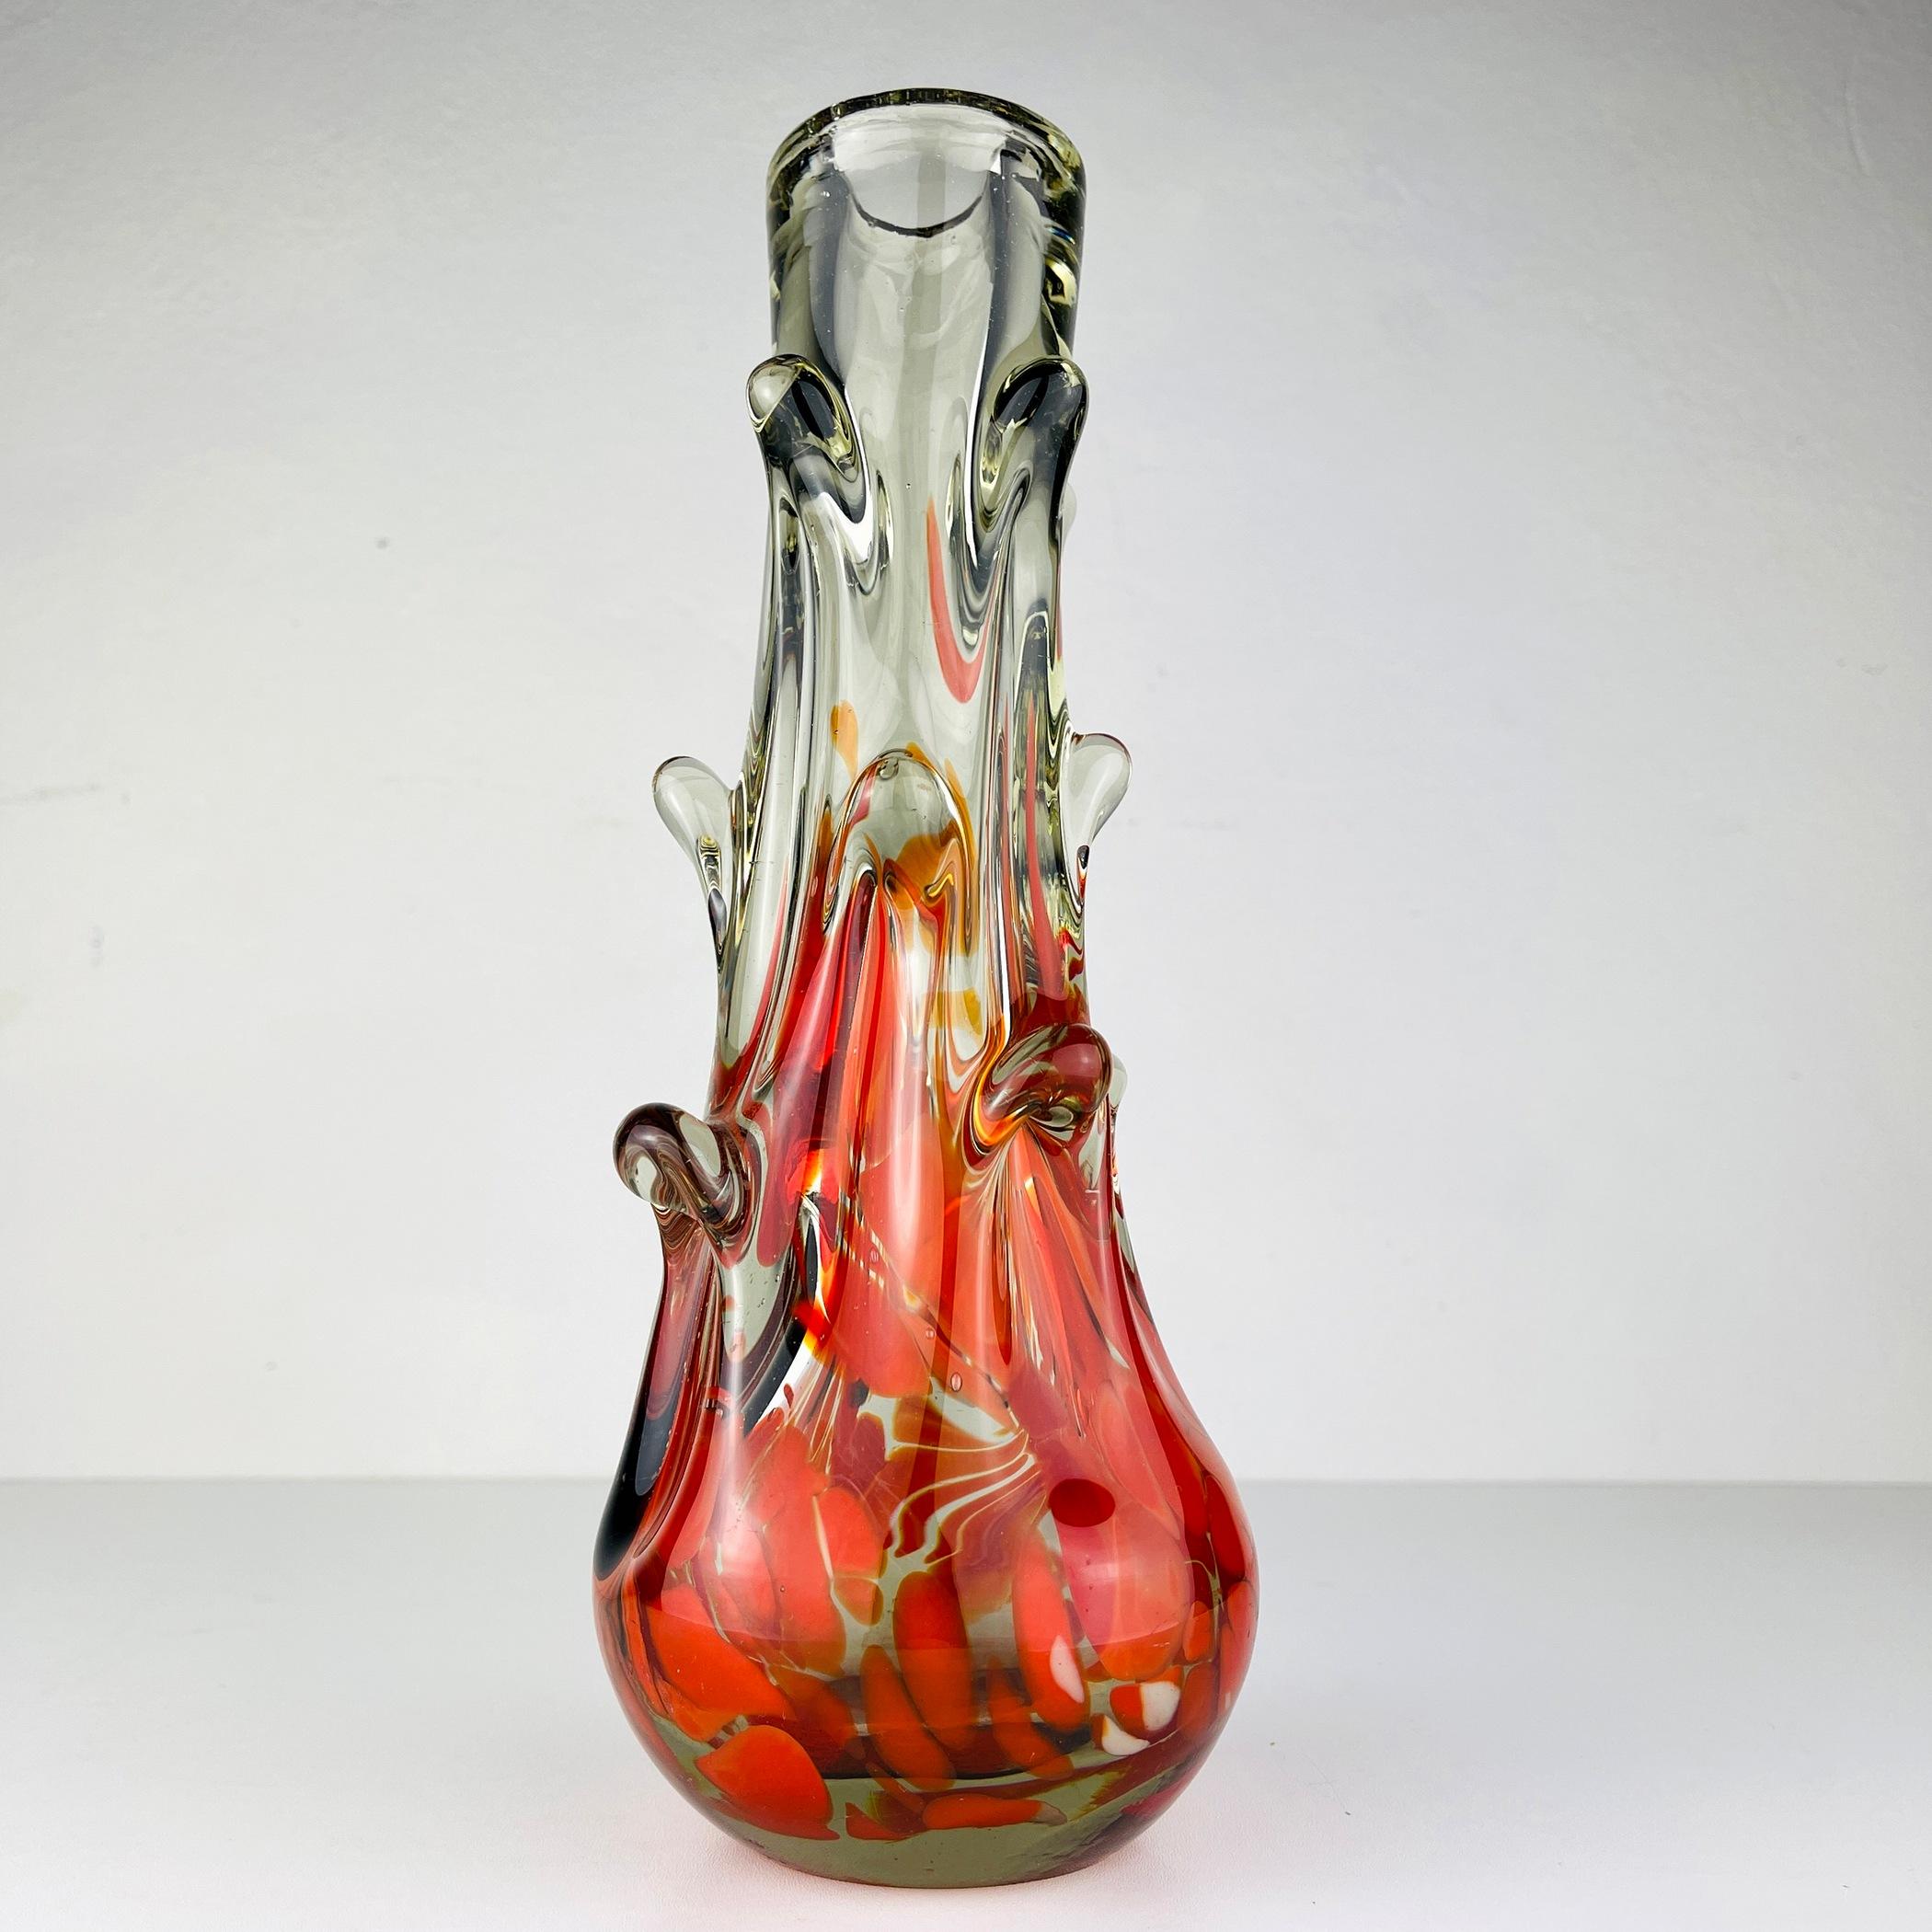 Ce magnifique vase du designer Dragan Drobnjak a été fabriqué à 